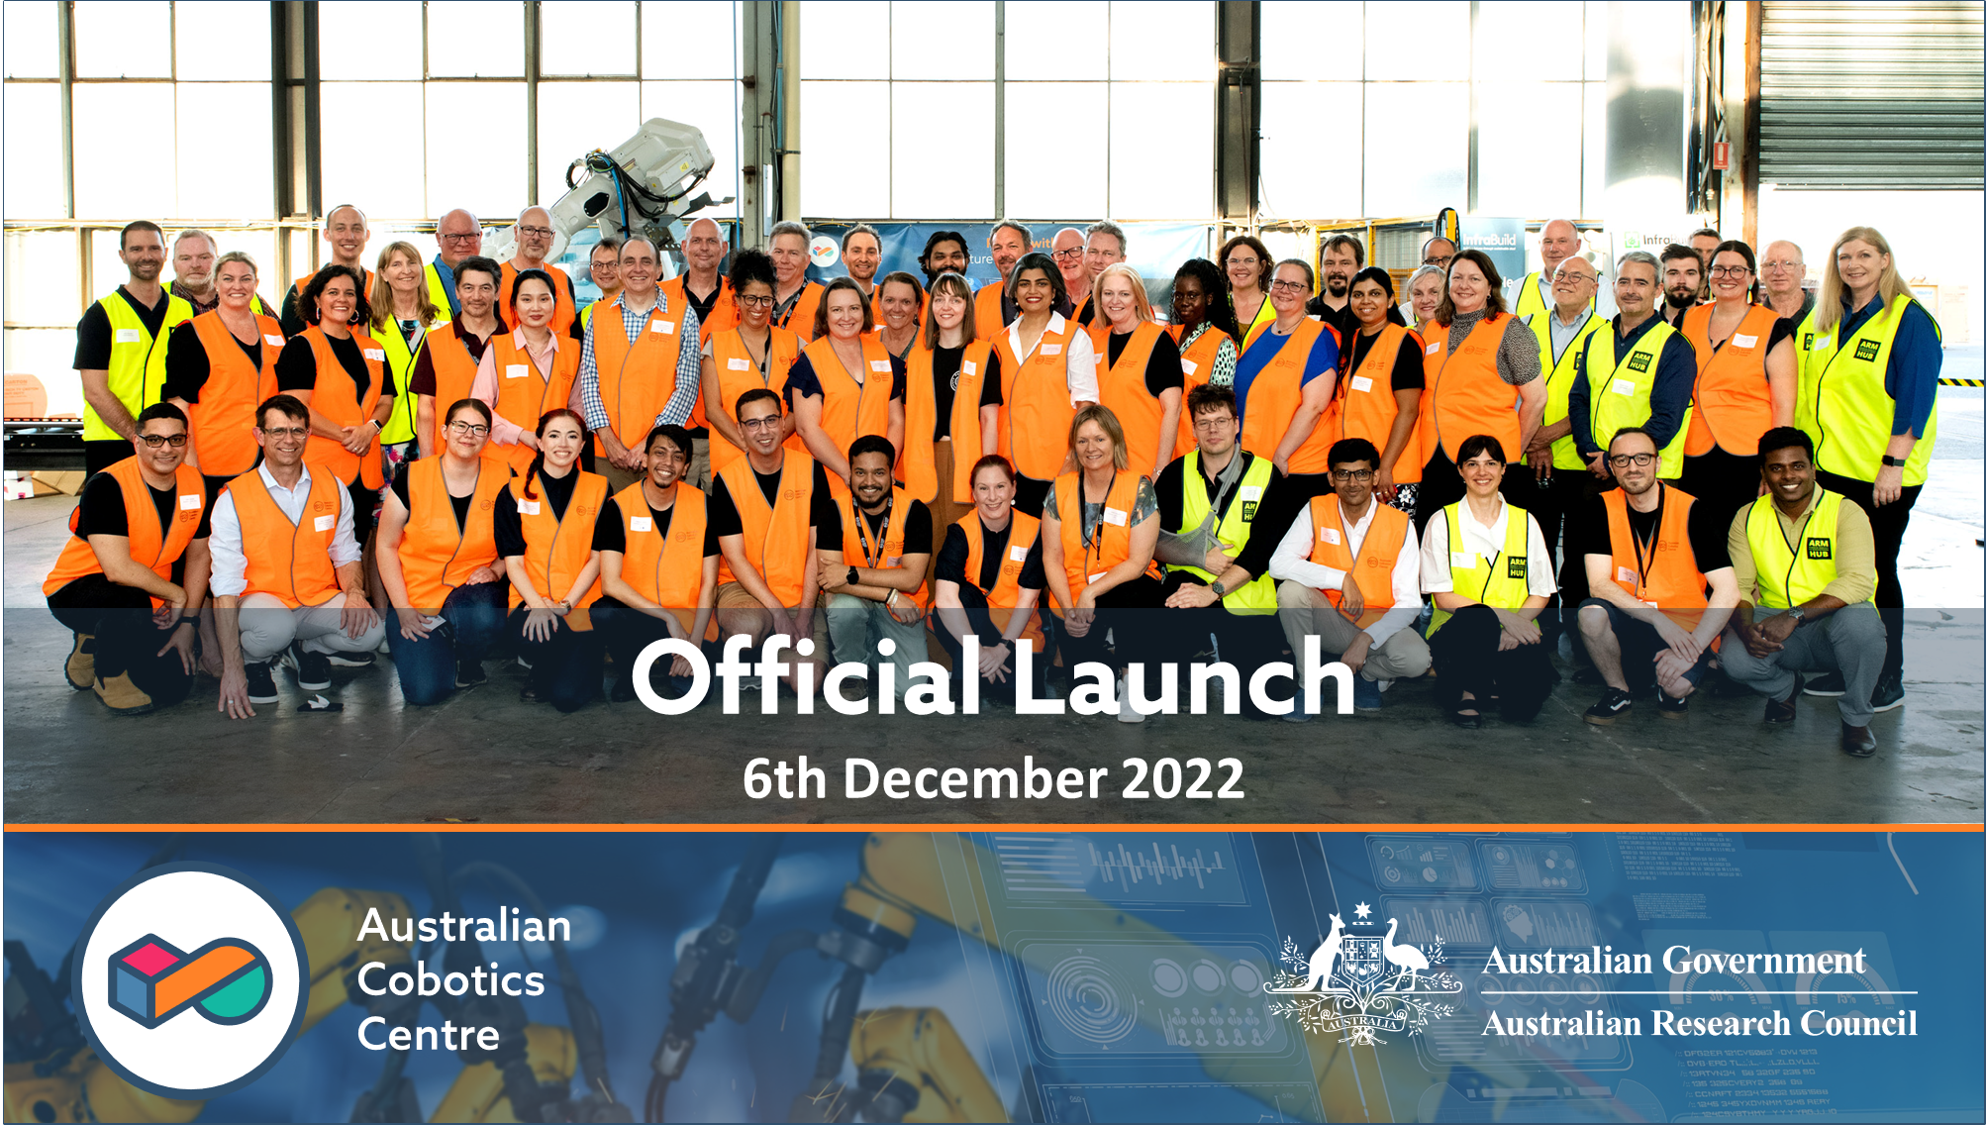 The Australian Cobotics Centre Official Launch